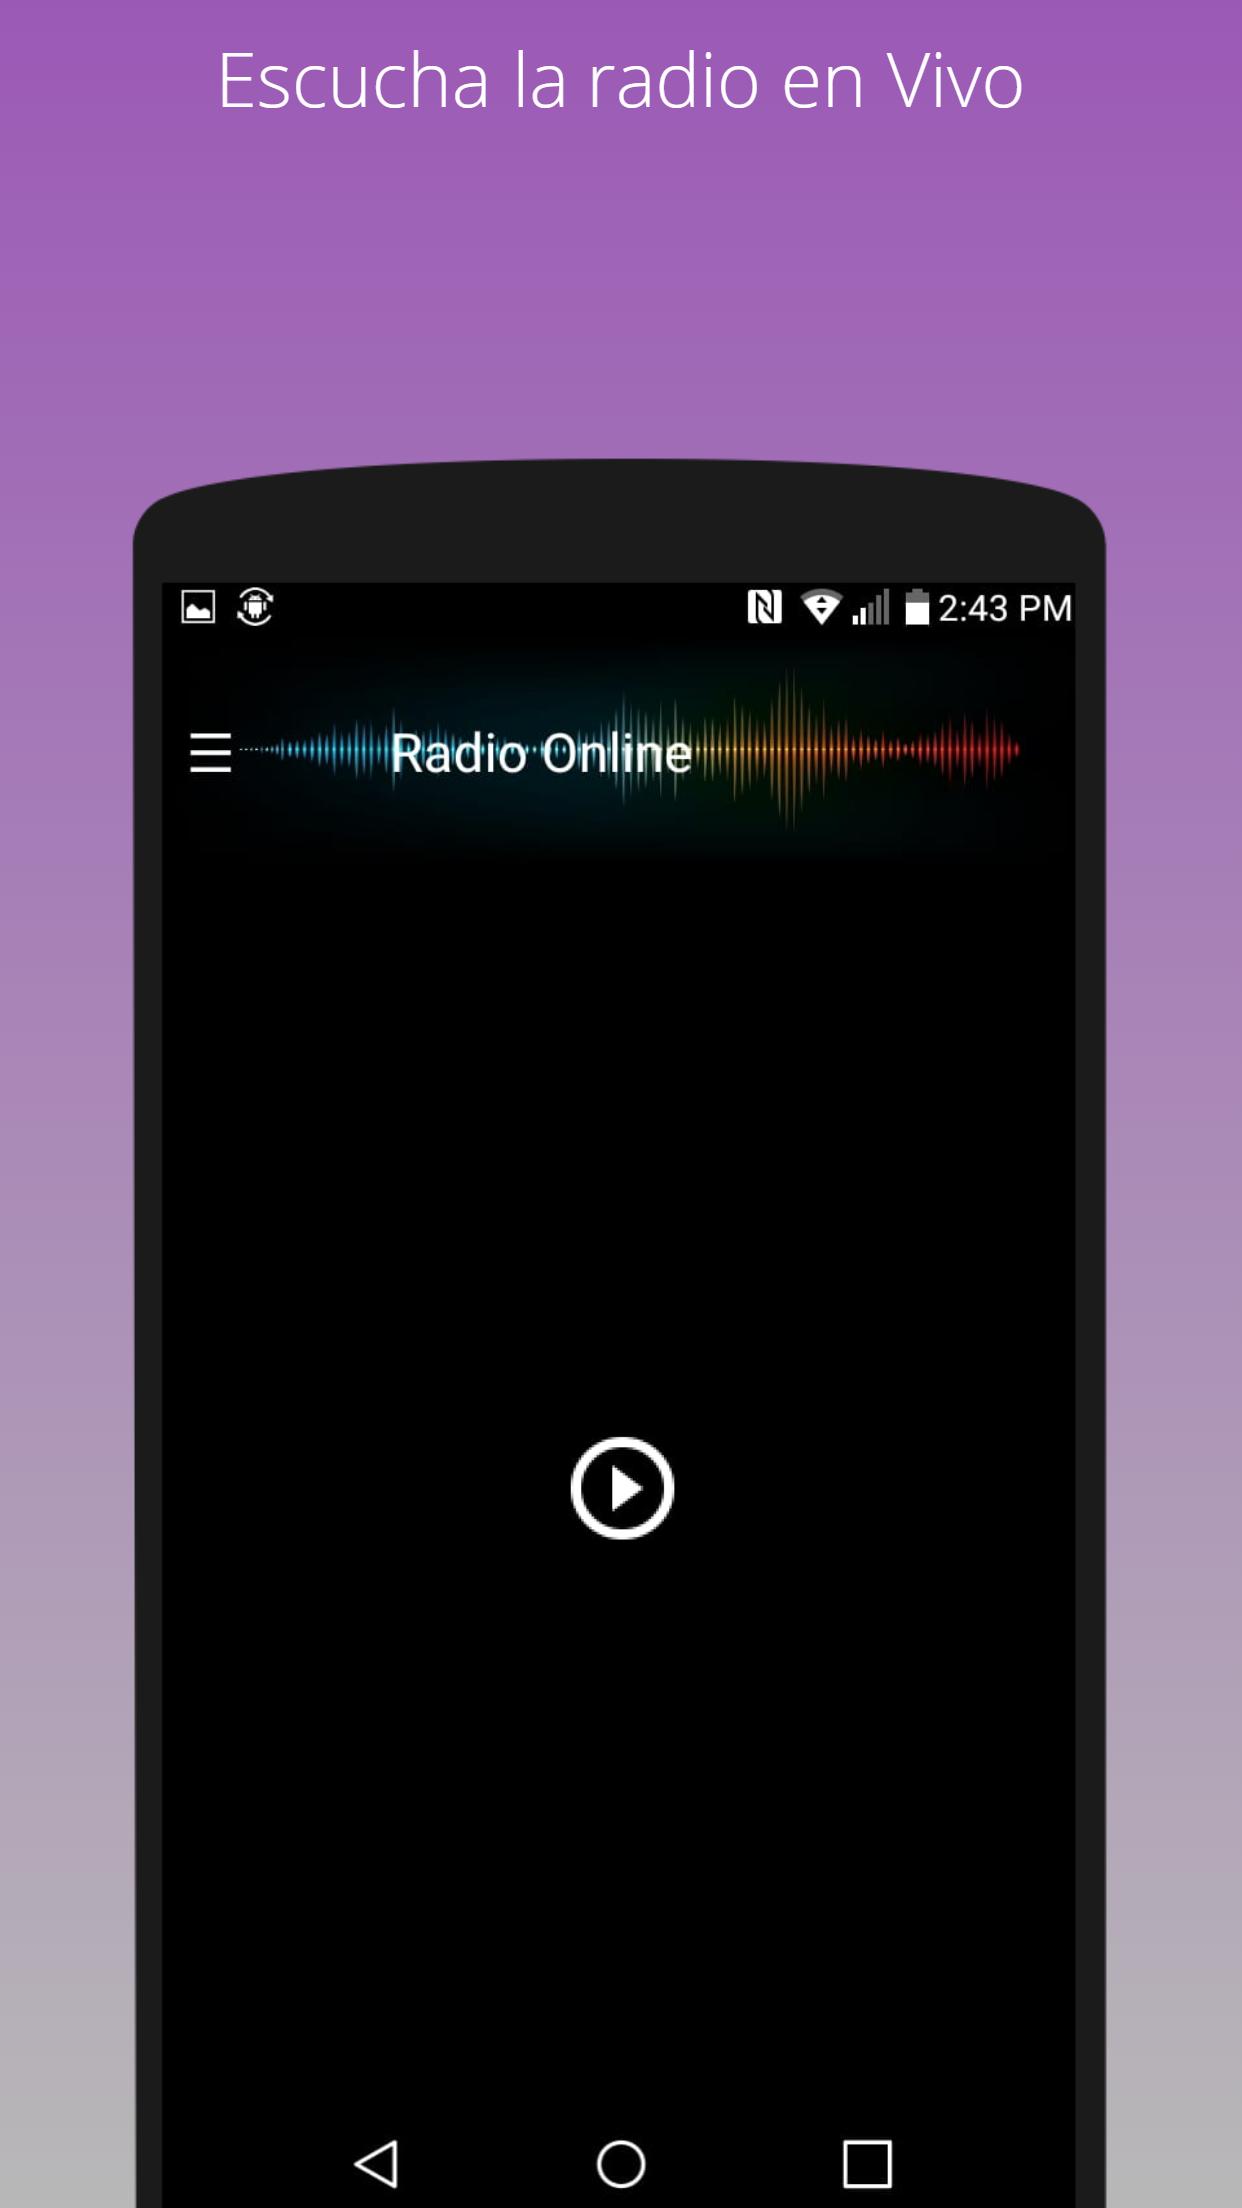 Magic 97.3 FM en vivo emisora Puerto Rico für Android - APK herunterladen